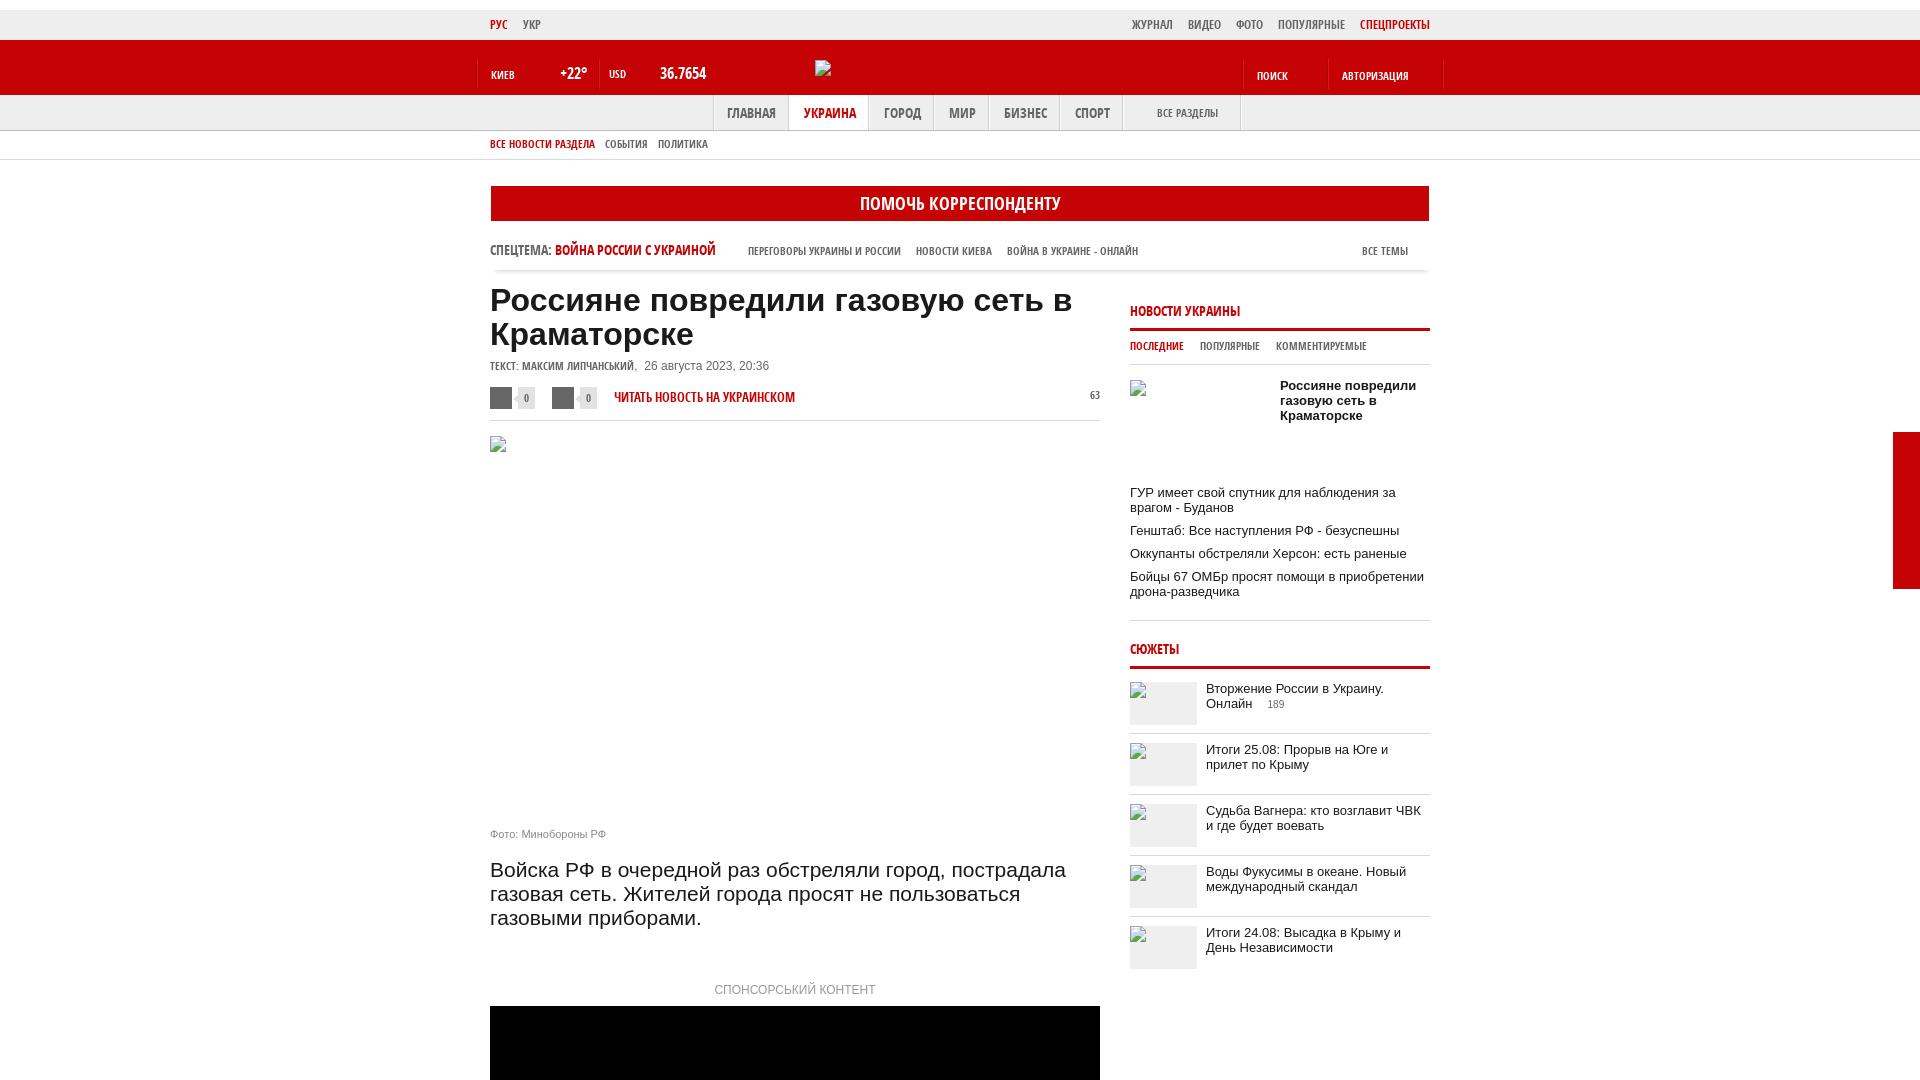 Rosjanie uszkodzili sieć gazową w Kramatorsku |  bot messenger